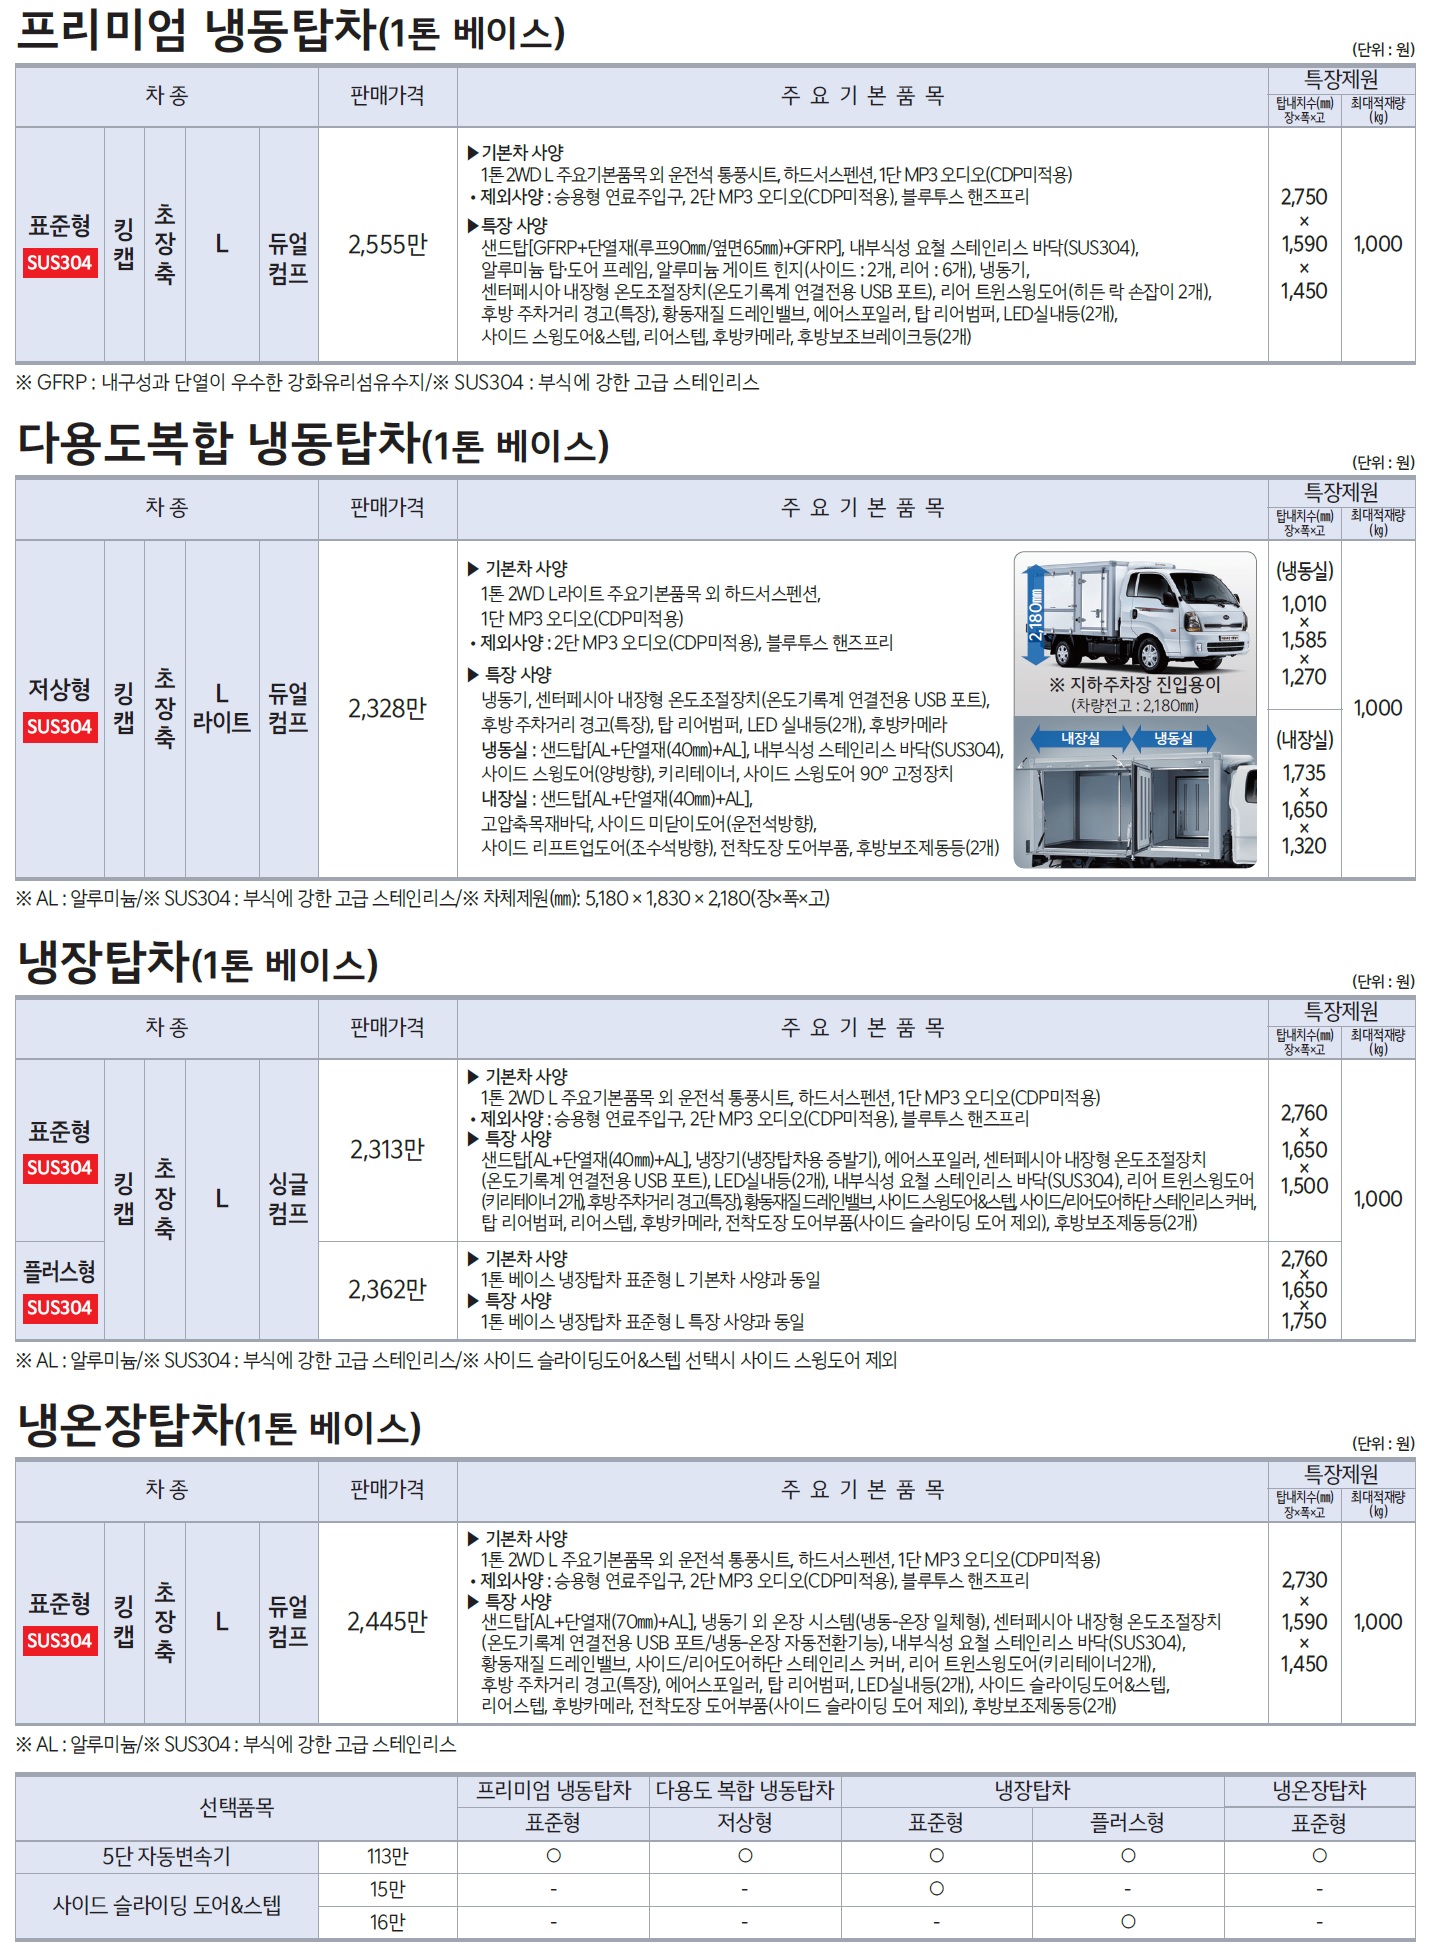 봉고3 특장차 가격표 - 2021년 02월 -4.jpg